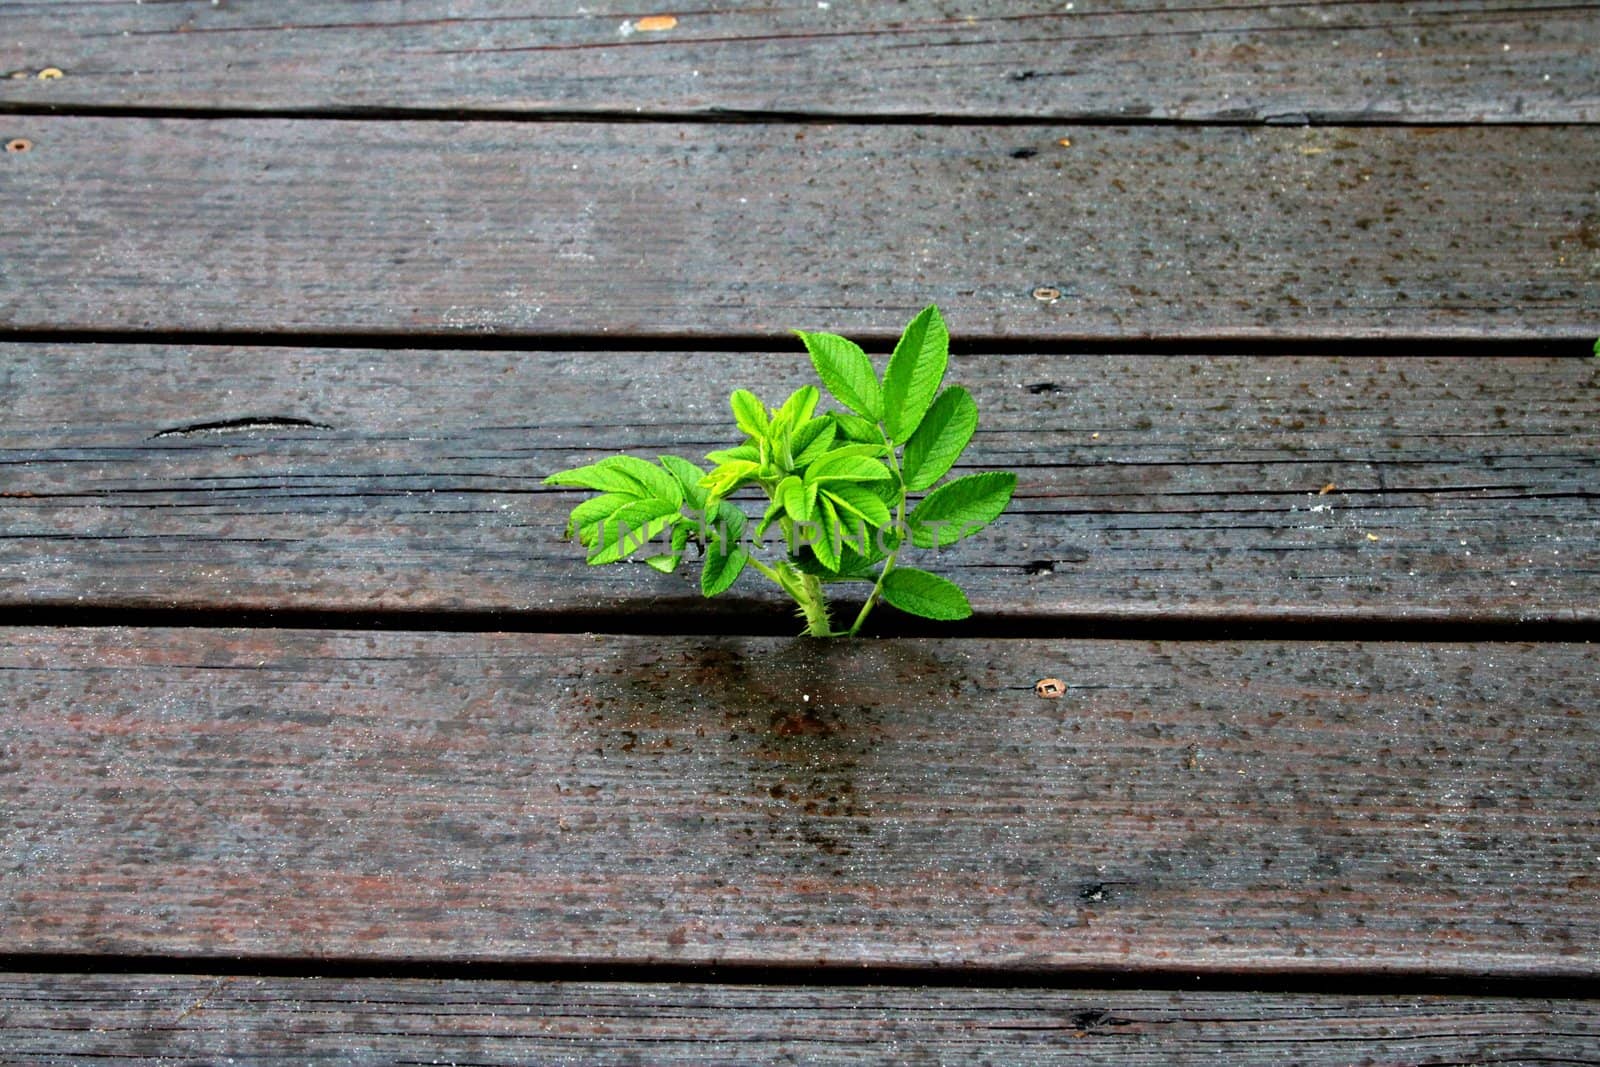 Wild plant growing between wooden walkway planks